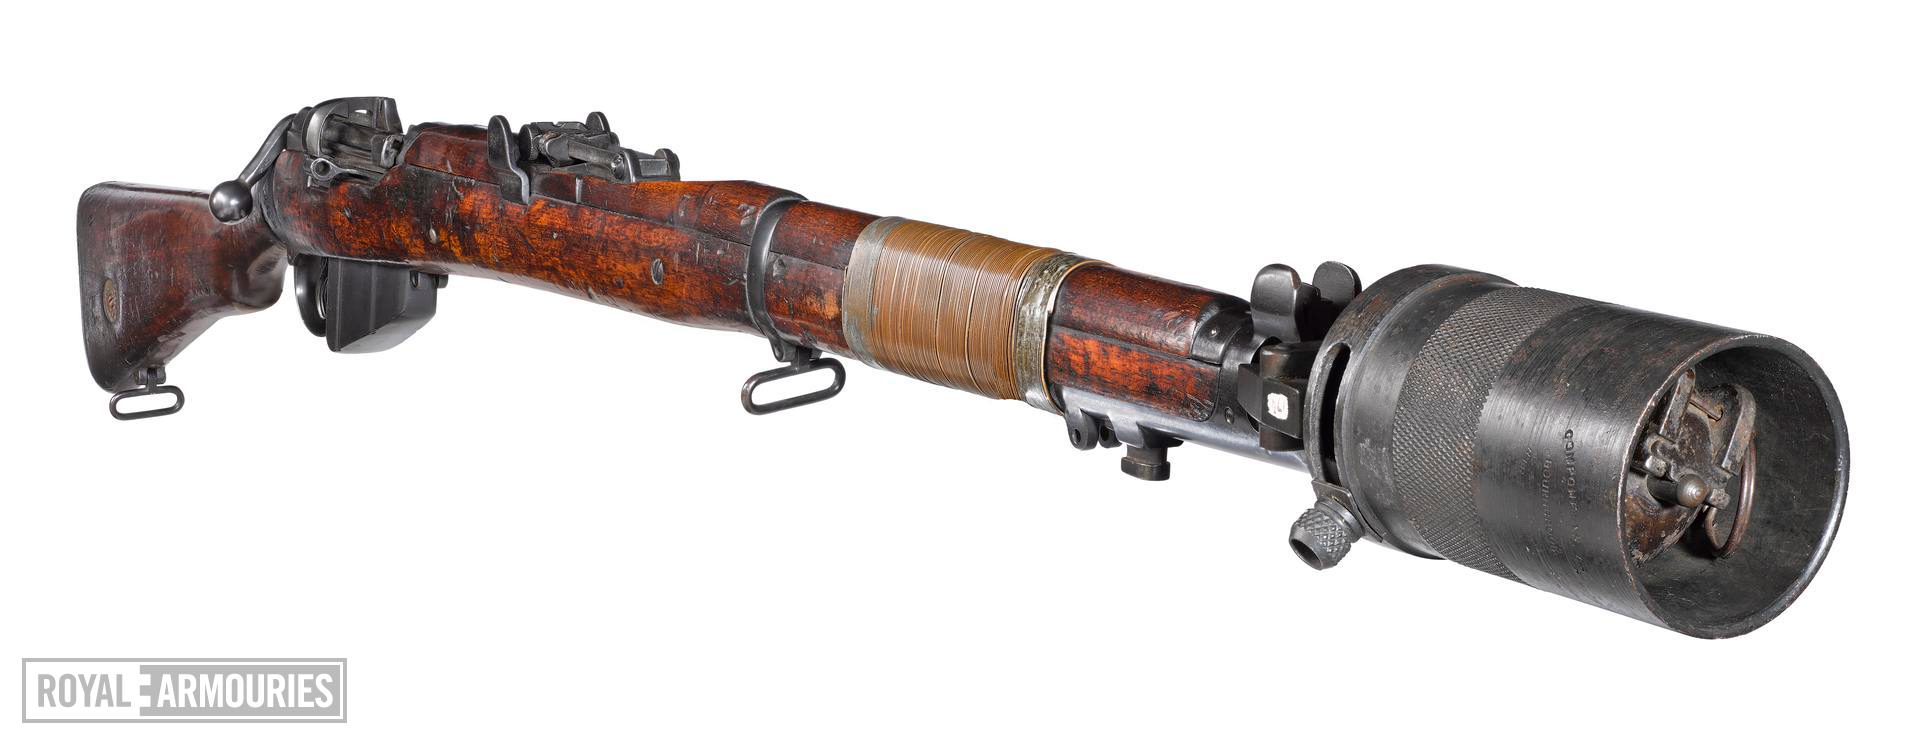 二战英国装备的枪榴弹结构和原理是什么样的?